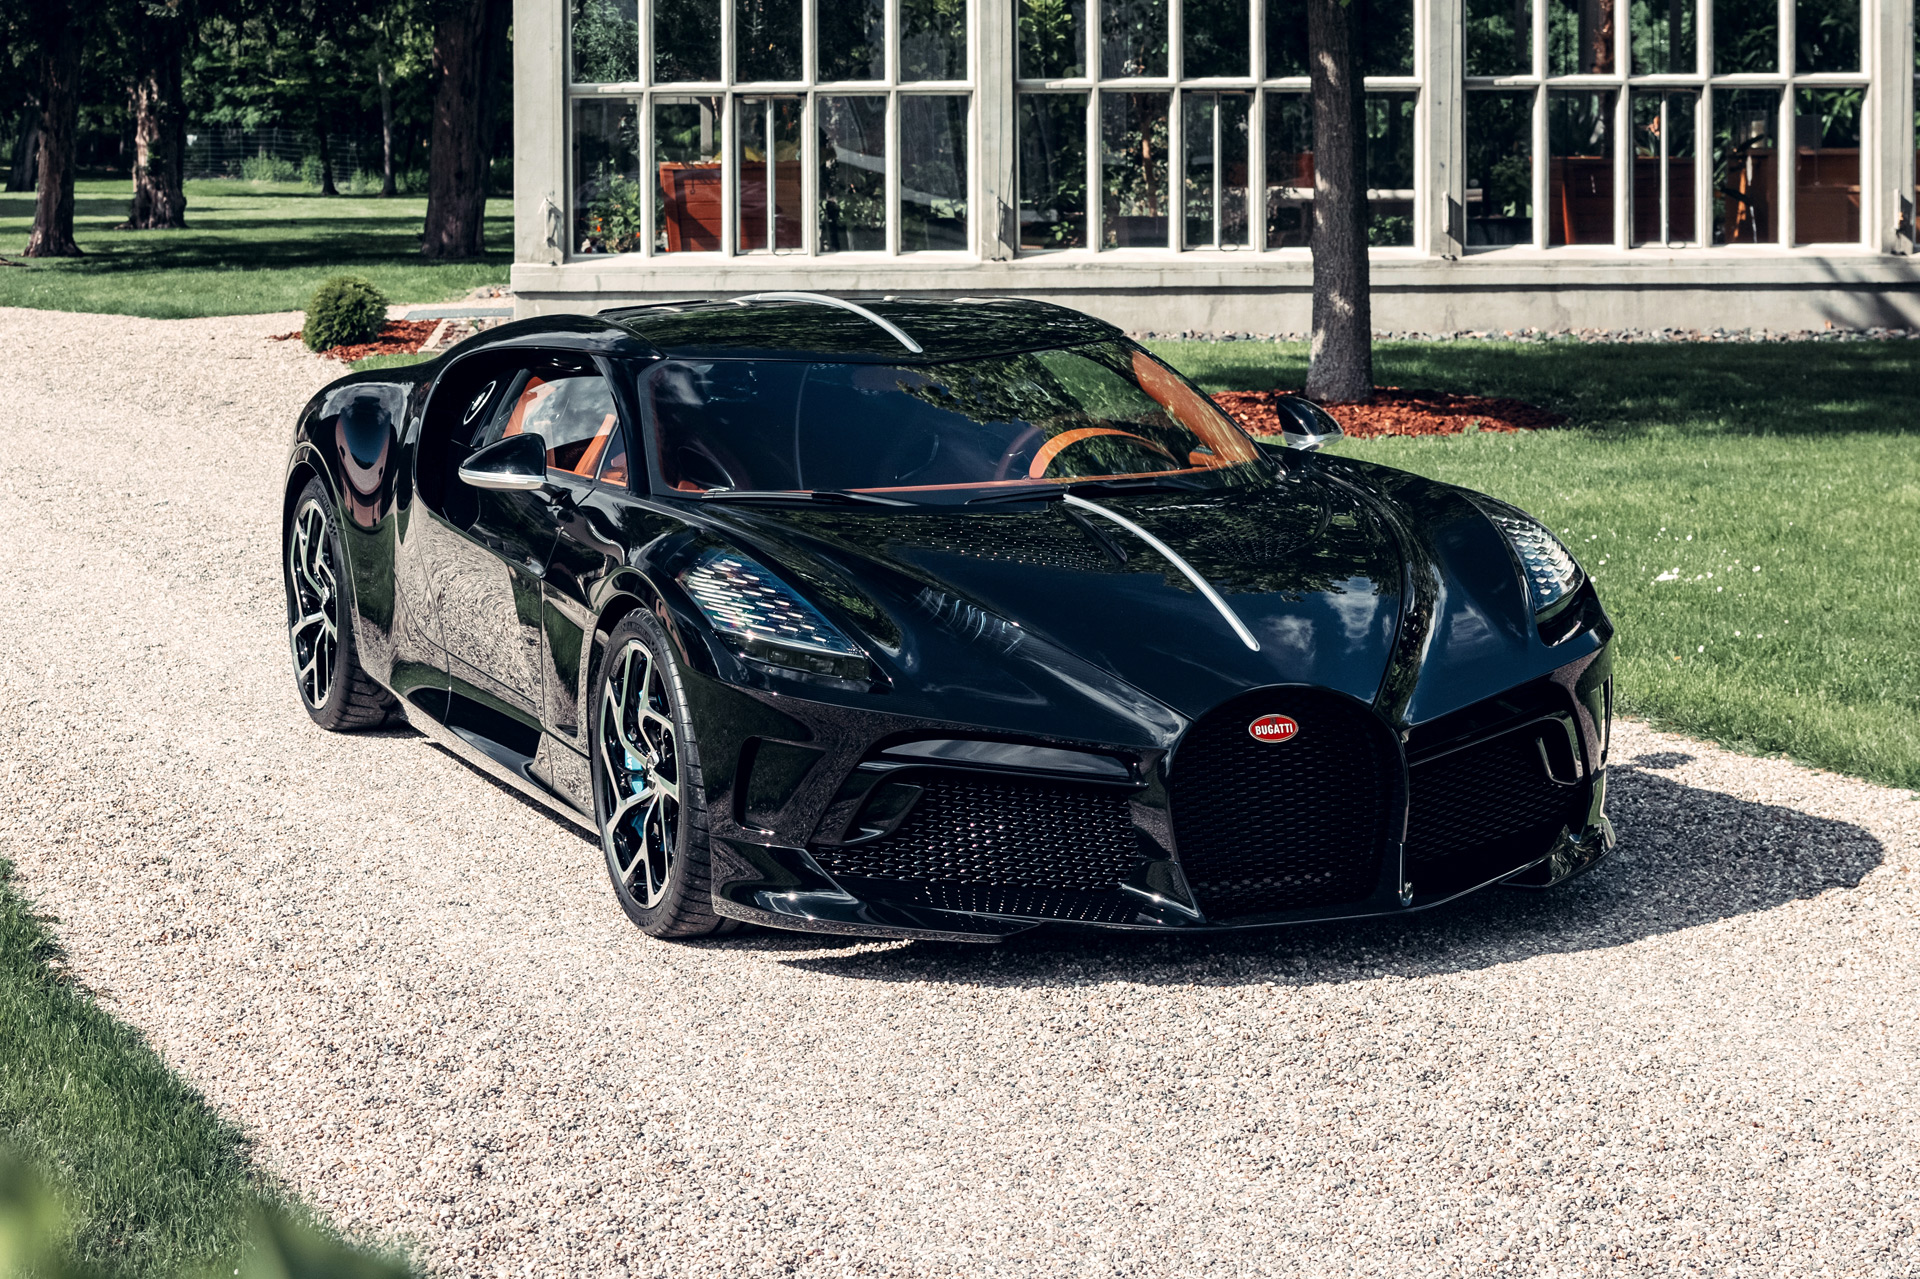 1-of-1 Bugatti La Voiture Noire finally ready for delivery